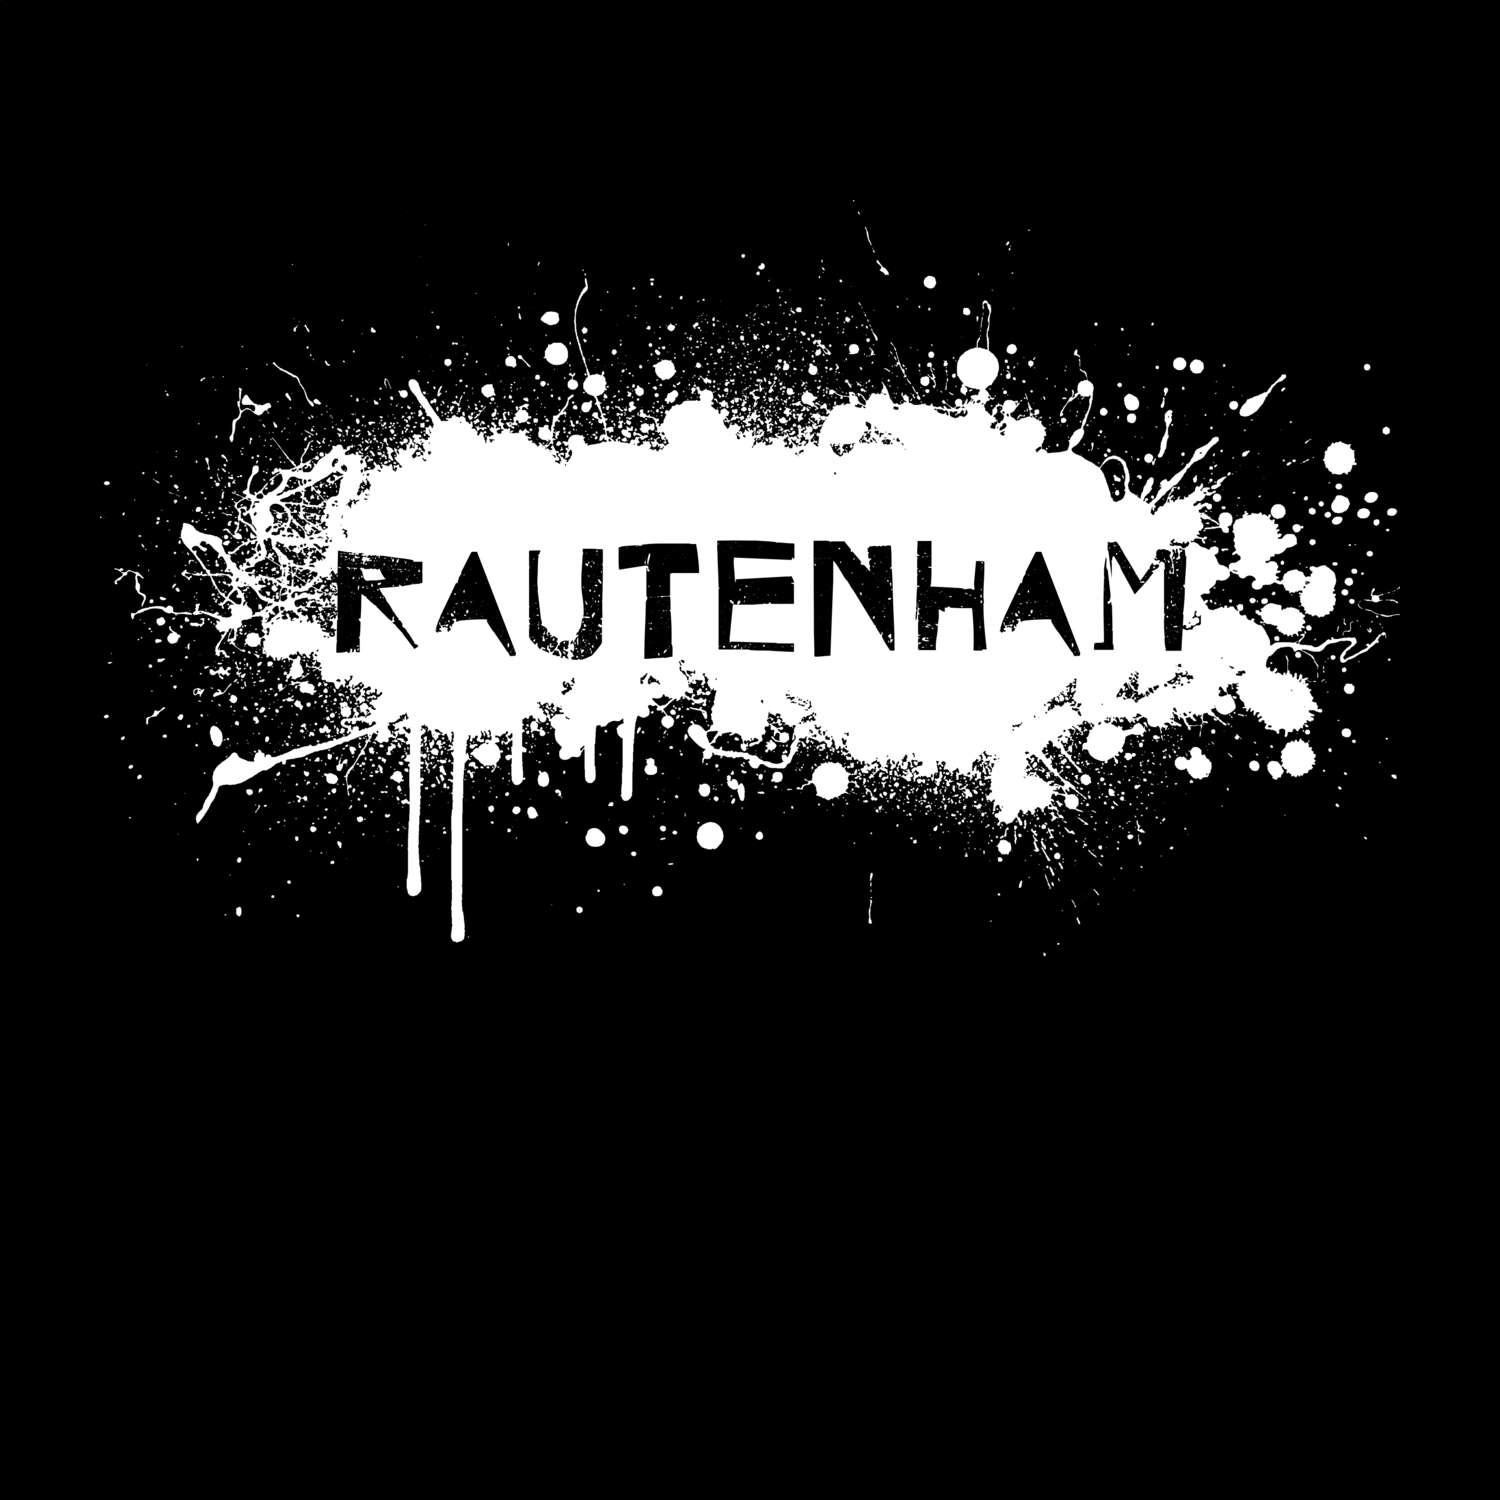 Rautenham T-Shirt »Paint Splash Punk«